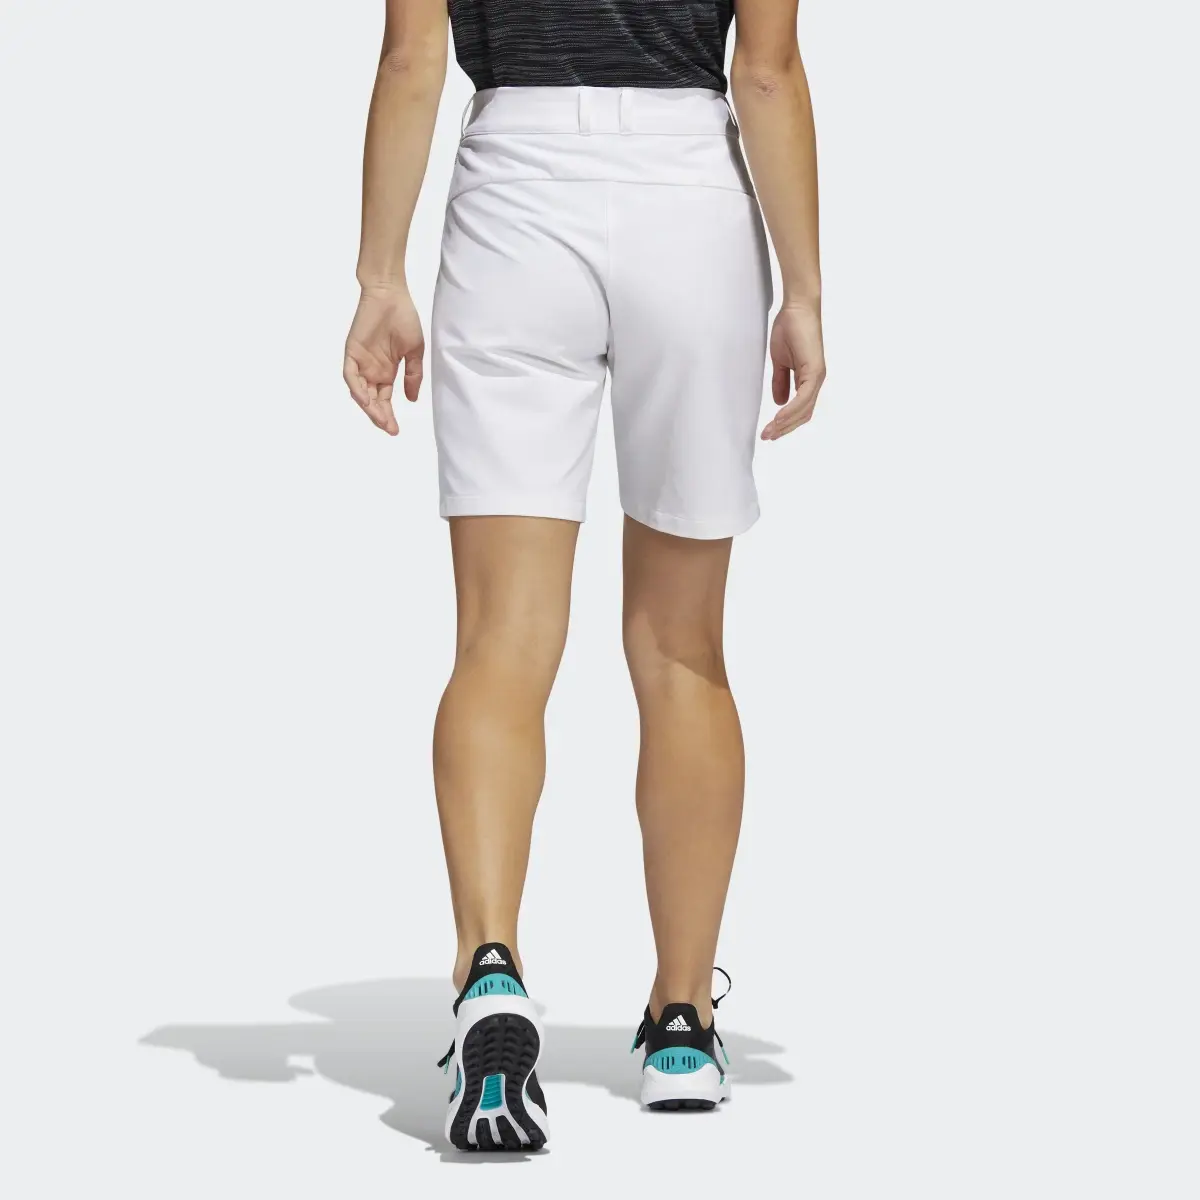 Adidas 7-Inch Shorts. 2